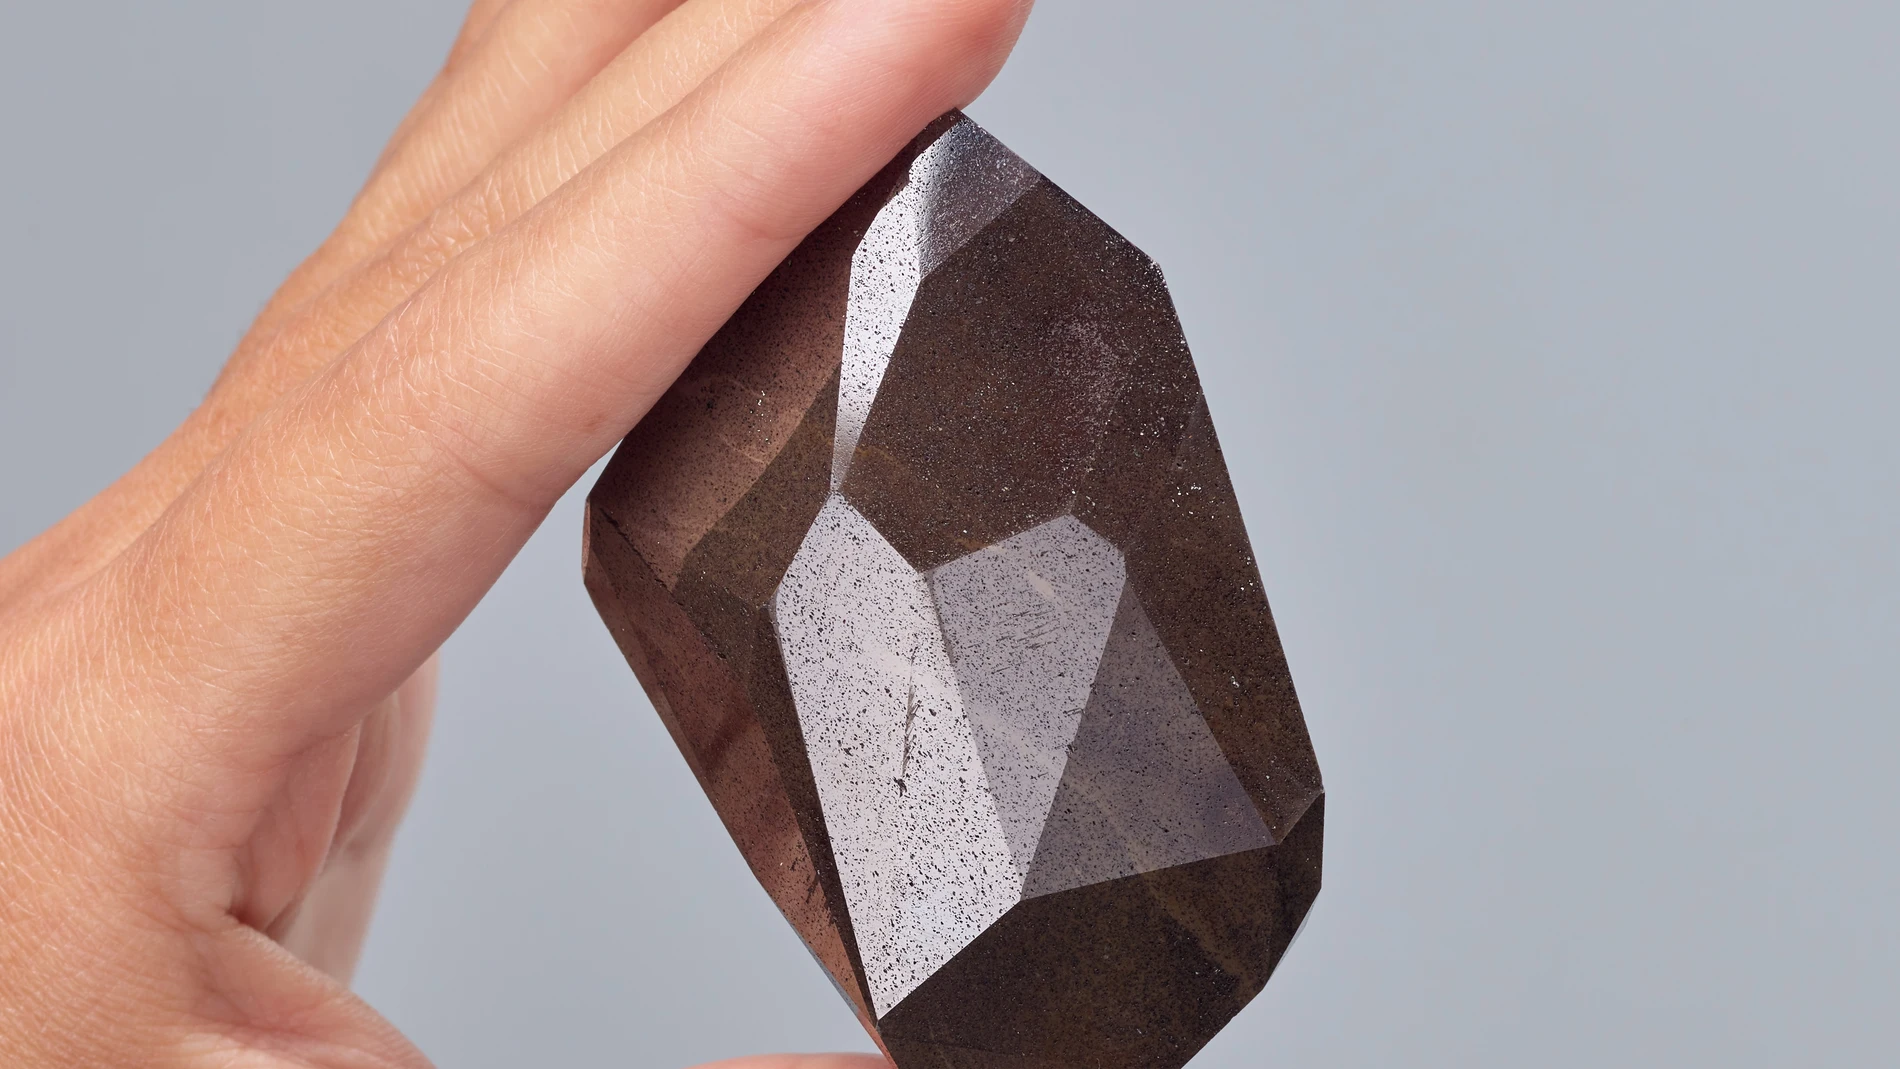 Fotografía promocional cedida por la casa de subastas Sotheby's donde se aprecia el diamante "Enigma", el mayor diamante negro facetado en entrar en una subasta | Fuente: EFE/Sotheby's